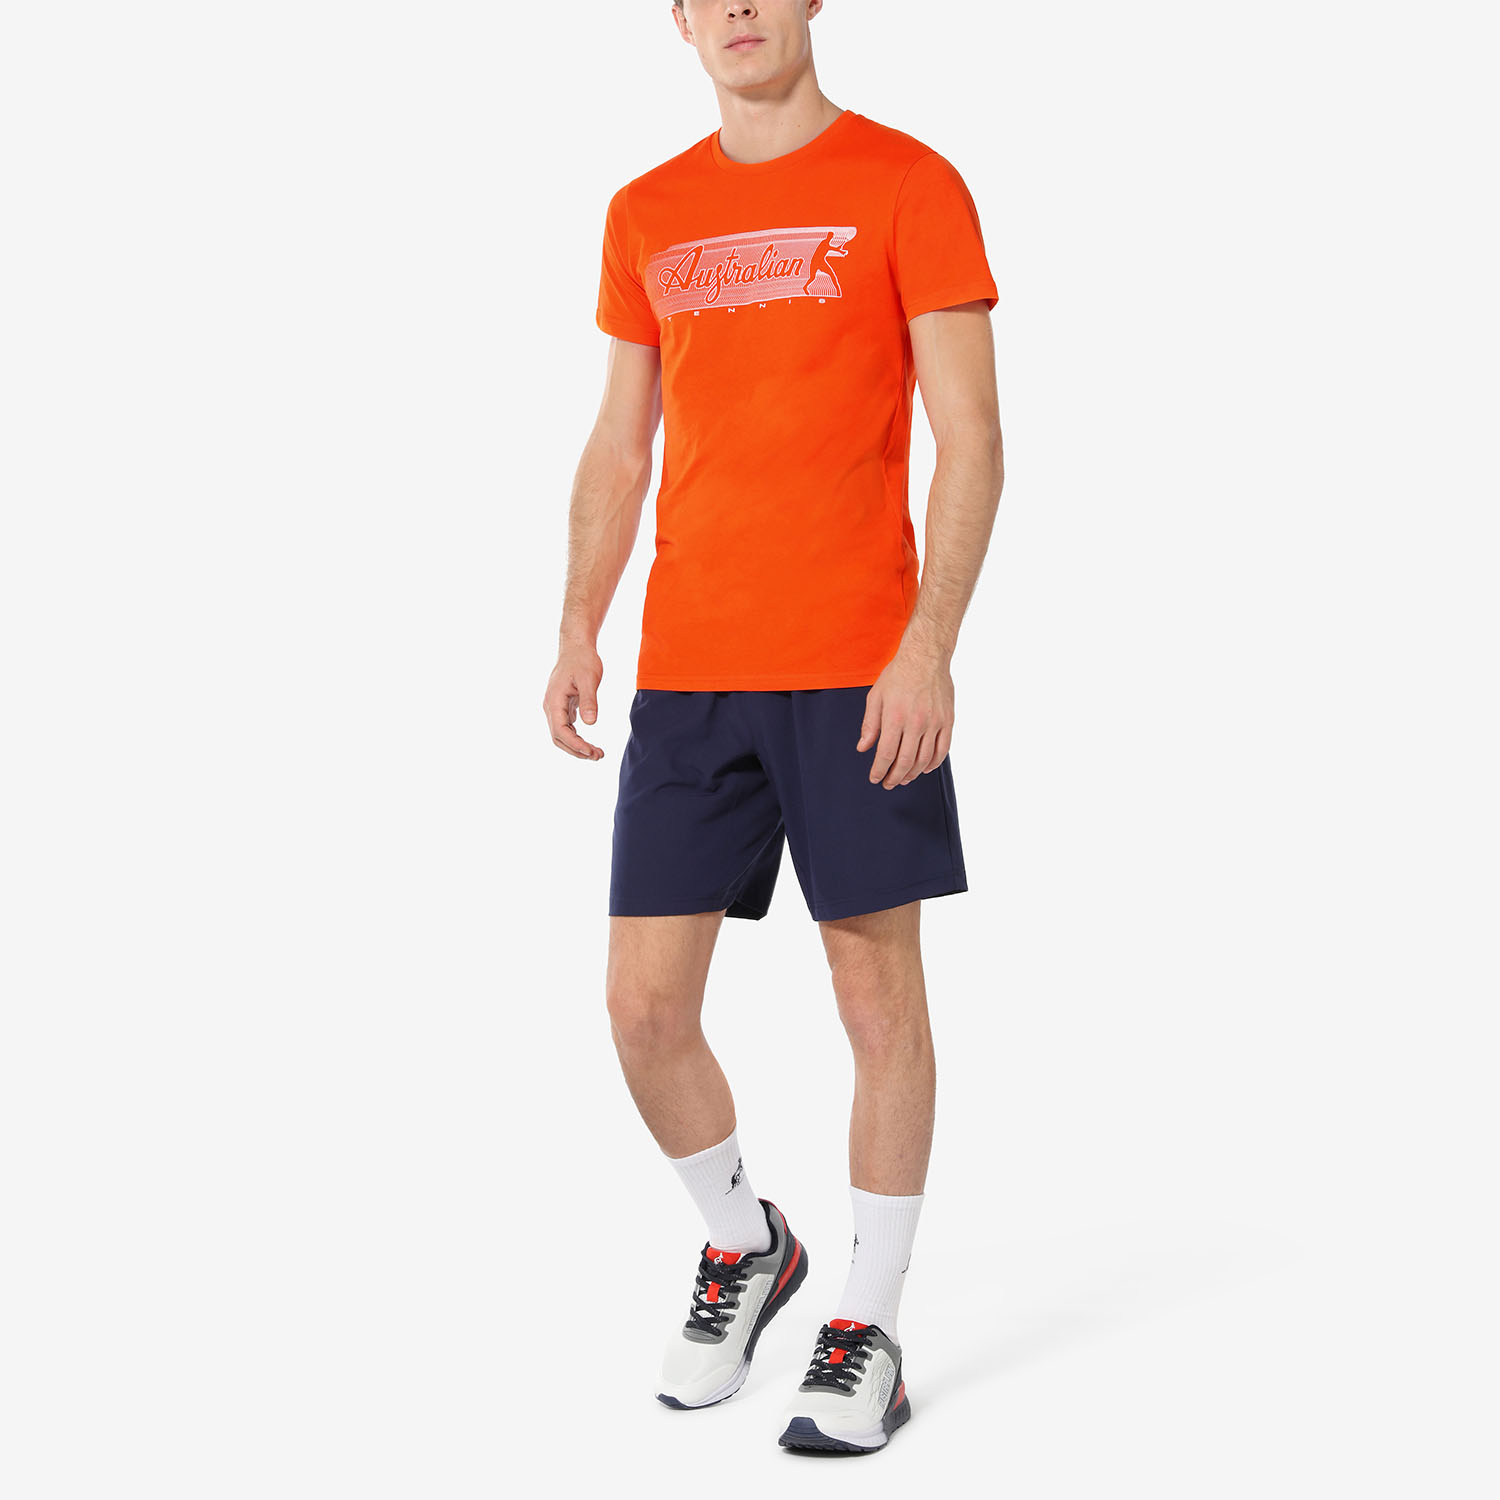 Australian Gradient Camiseta - Orange/Blu